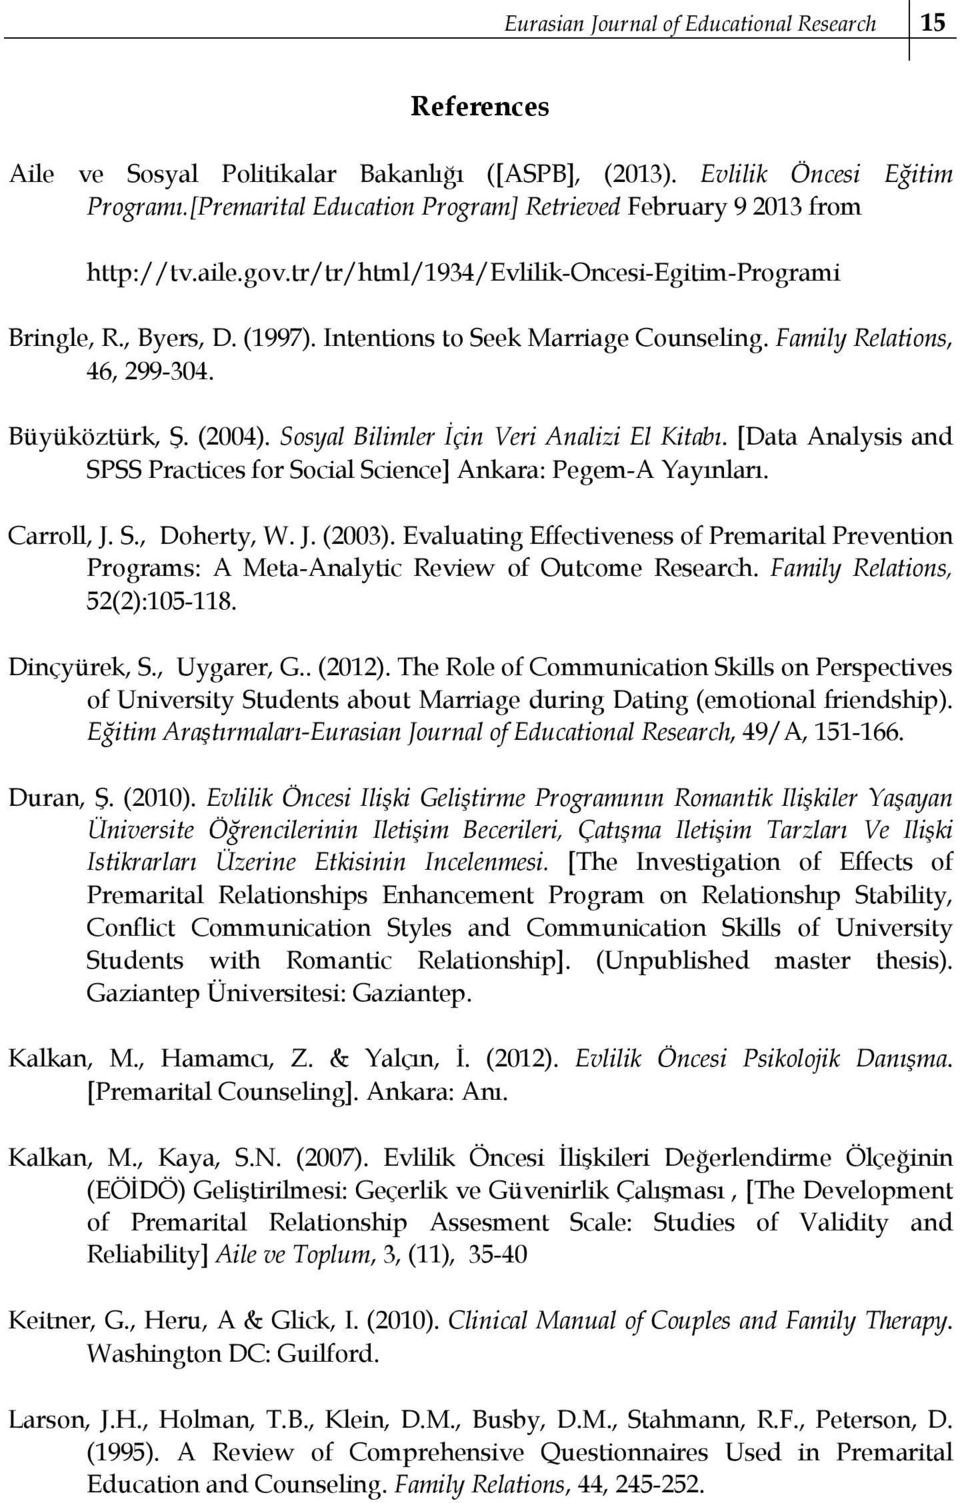 Sosyal Bilimler İçin Veri Analizi El Kitabı. [Data Analysis and SPSS Practices for Social Science] Ankara: Pegem-A Yayınları. Carroll, J. S., Doherty, W. J. (03).